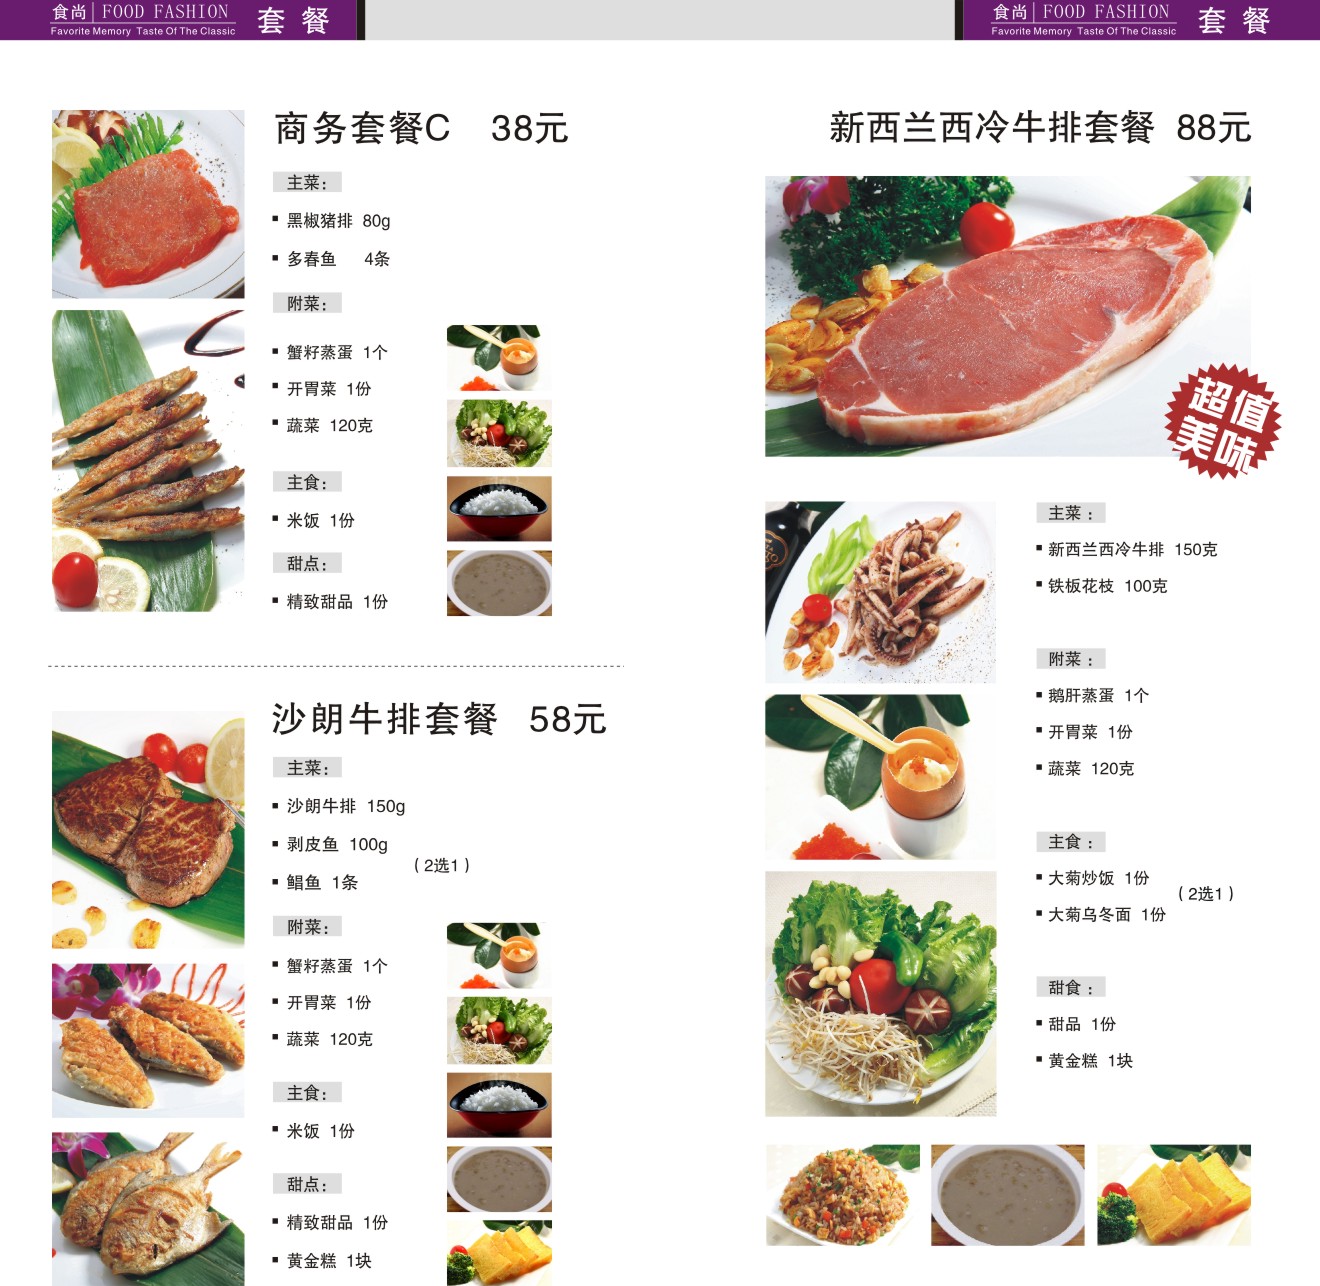 菜谱册日本铁板烧 日本料理菜谱 铁板烧菜谱